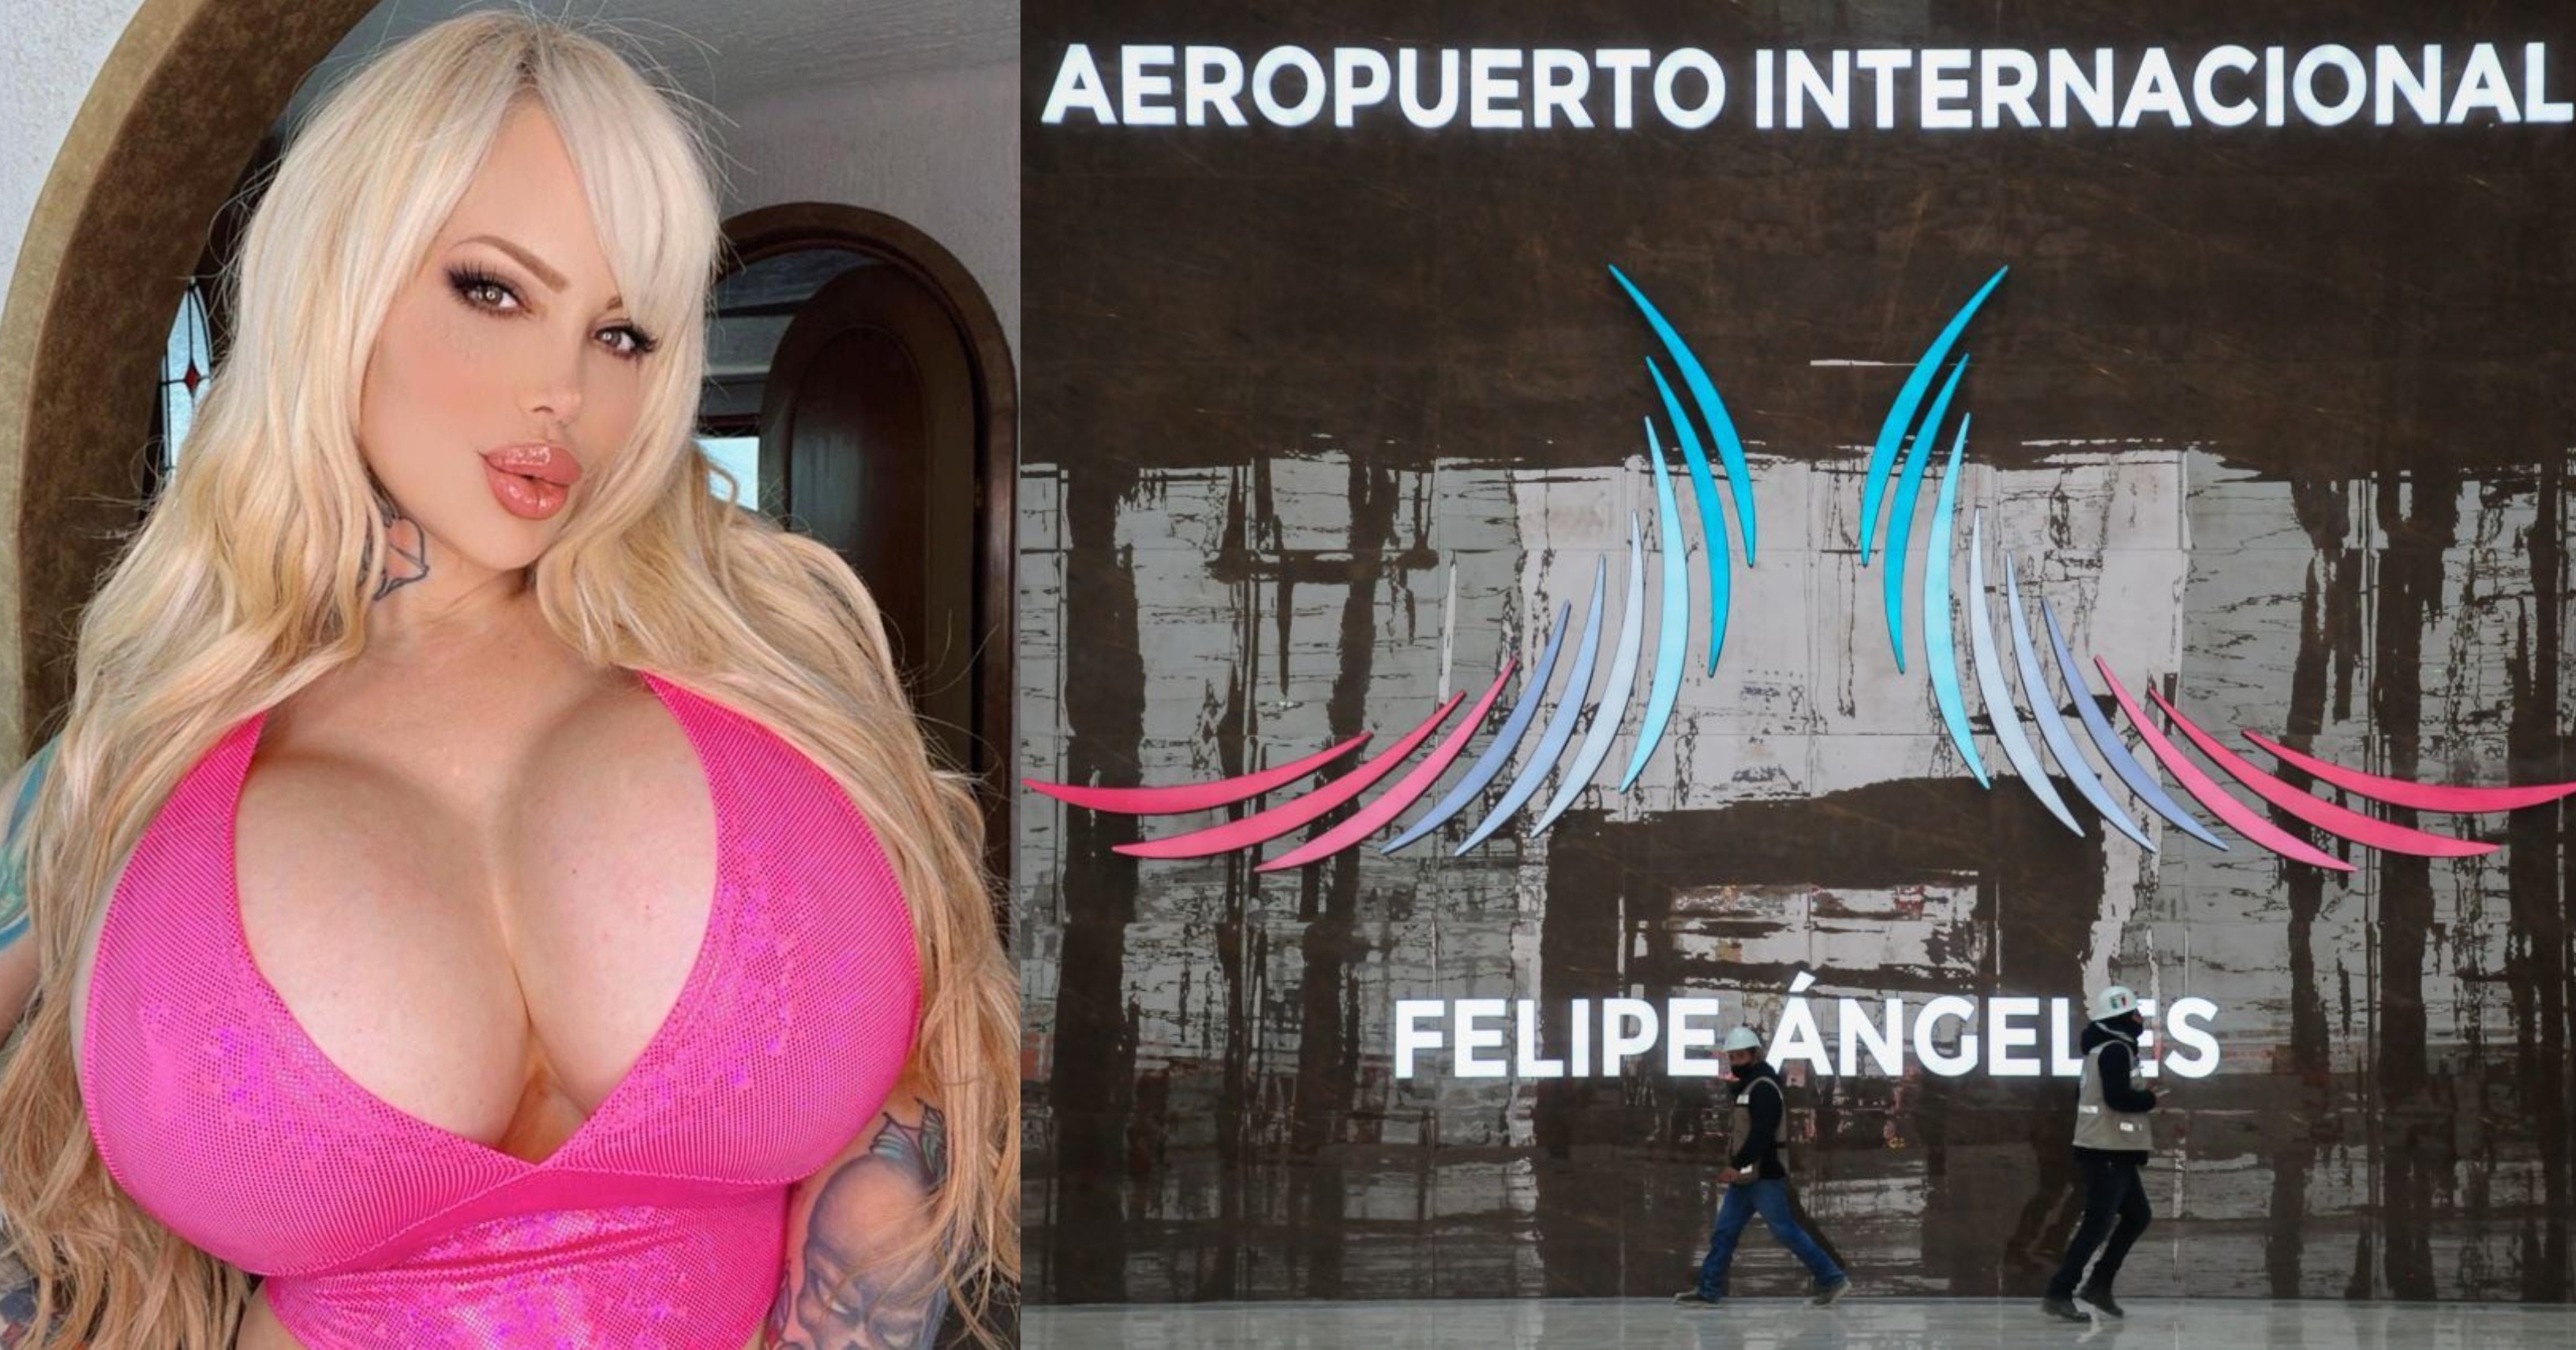 Las redes sociales del puerto aéreo presumieron la presencia de la modelo argentina en sus instalaciones (FOTO: DANIEL AUGUSTO /CUARTOSCURO.COM / Instagram @sabrinasabrokreal)